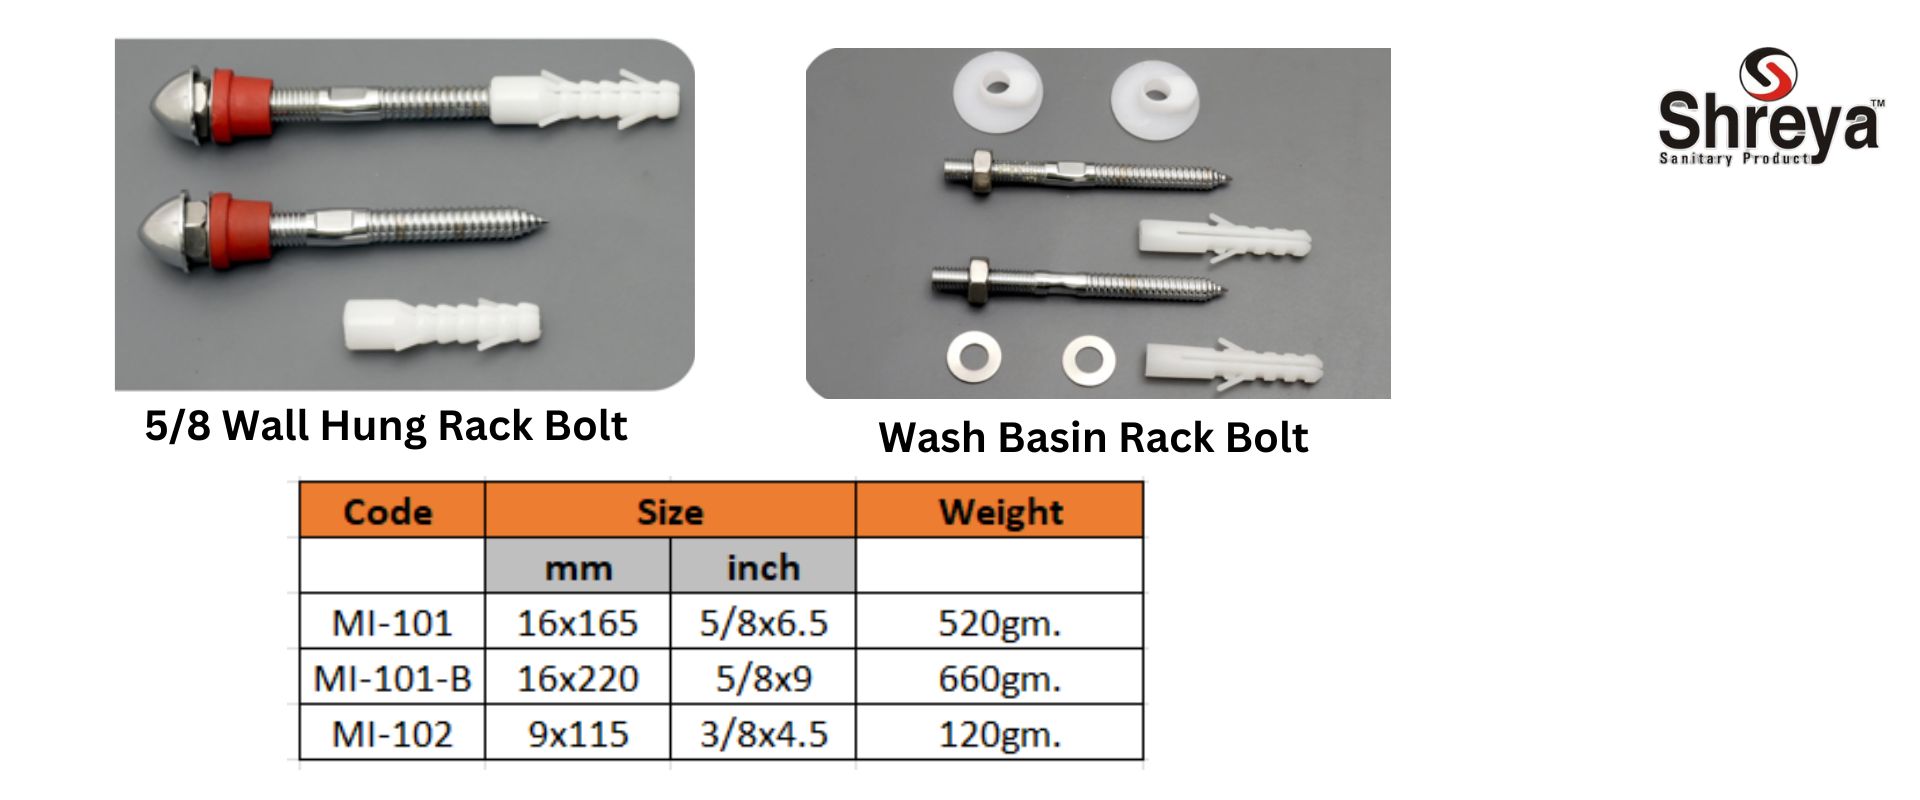 Wash Basin Rack Bolt